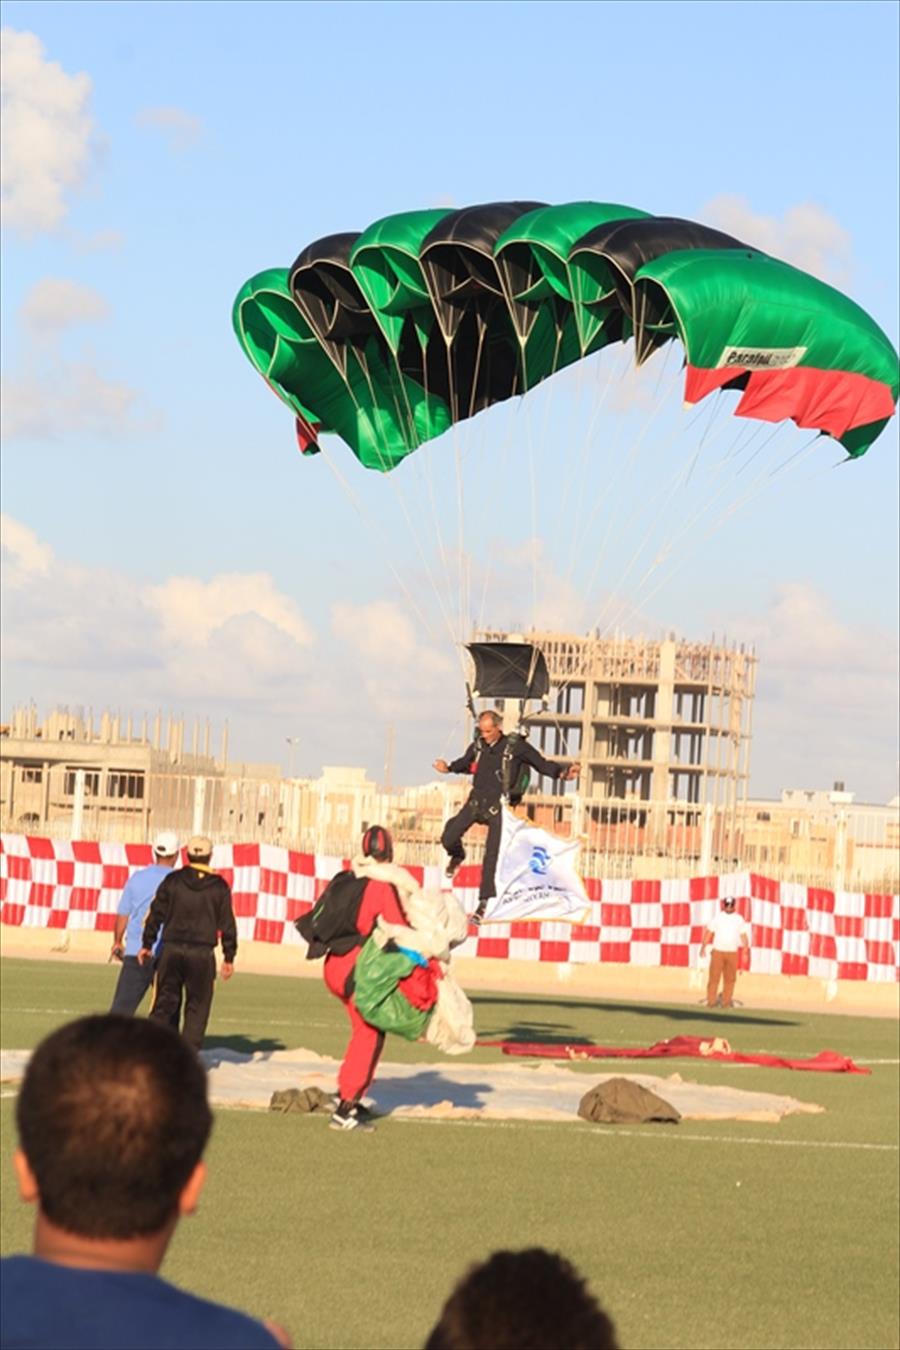 بالصور: النادي الأهلي يحتضن مهرجان بنغازي للرياضات الجوية